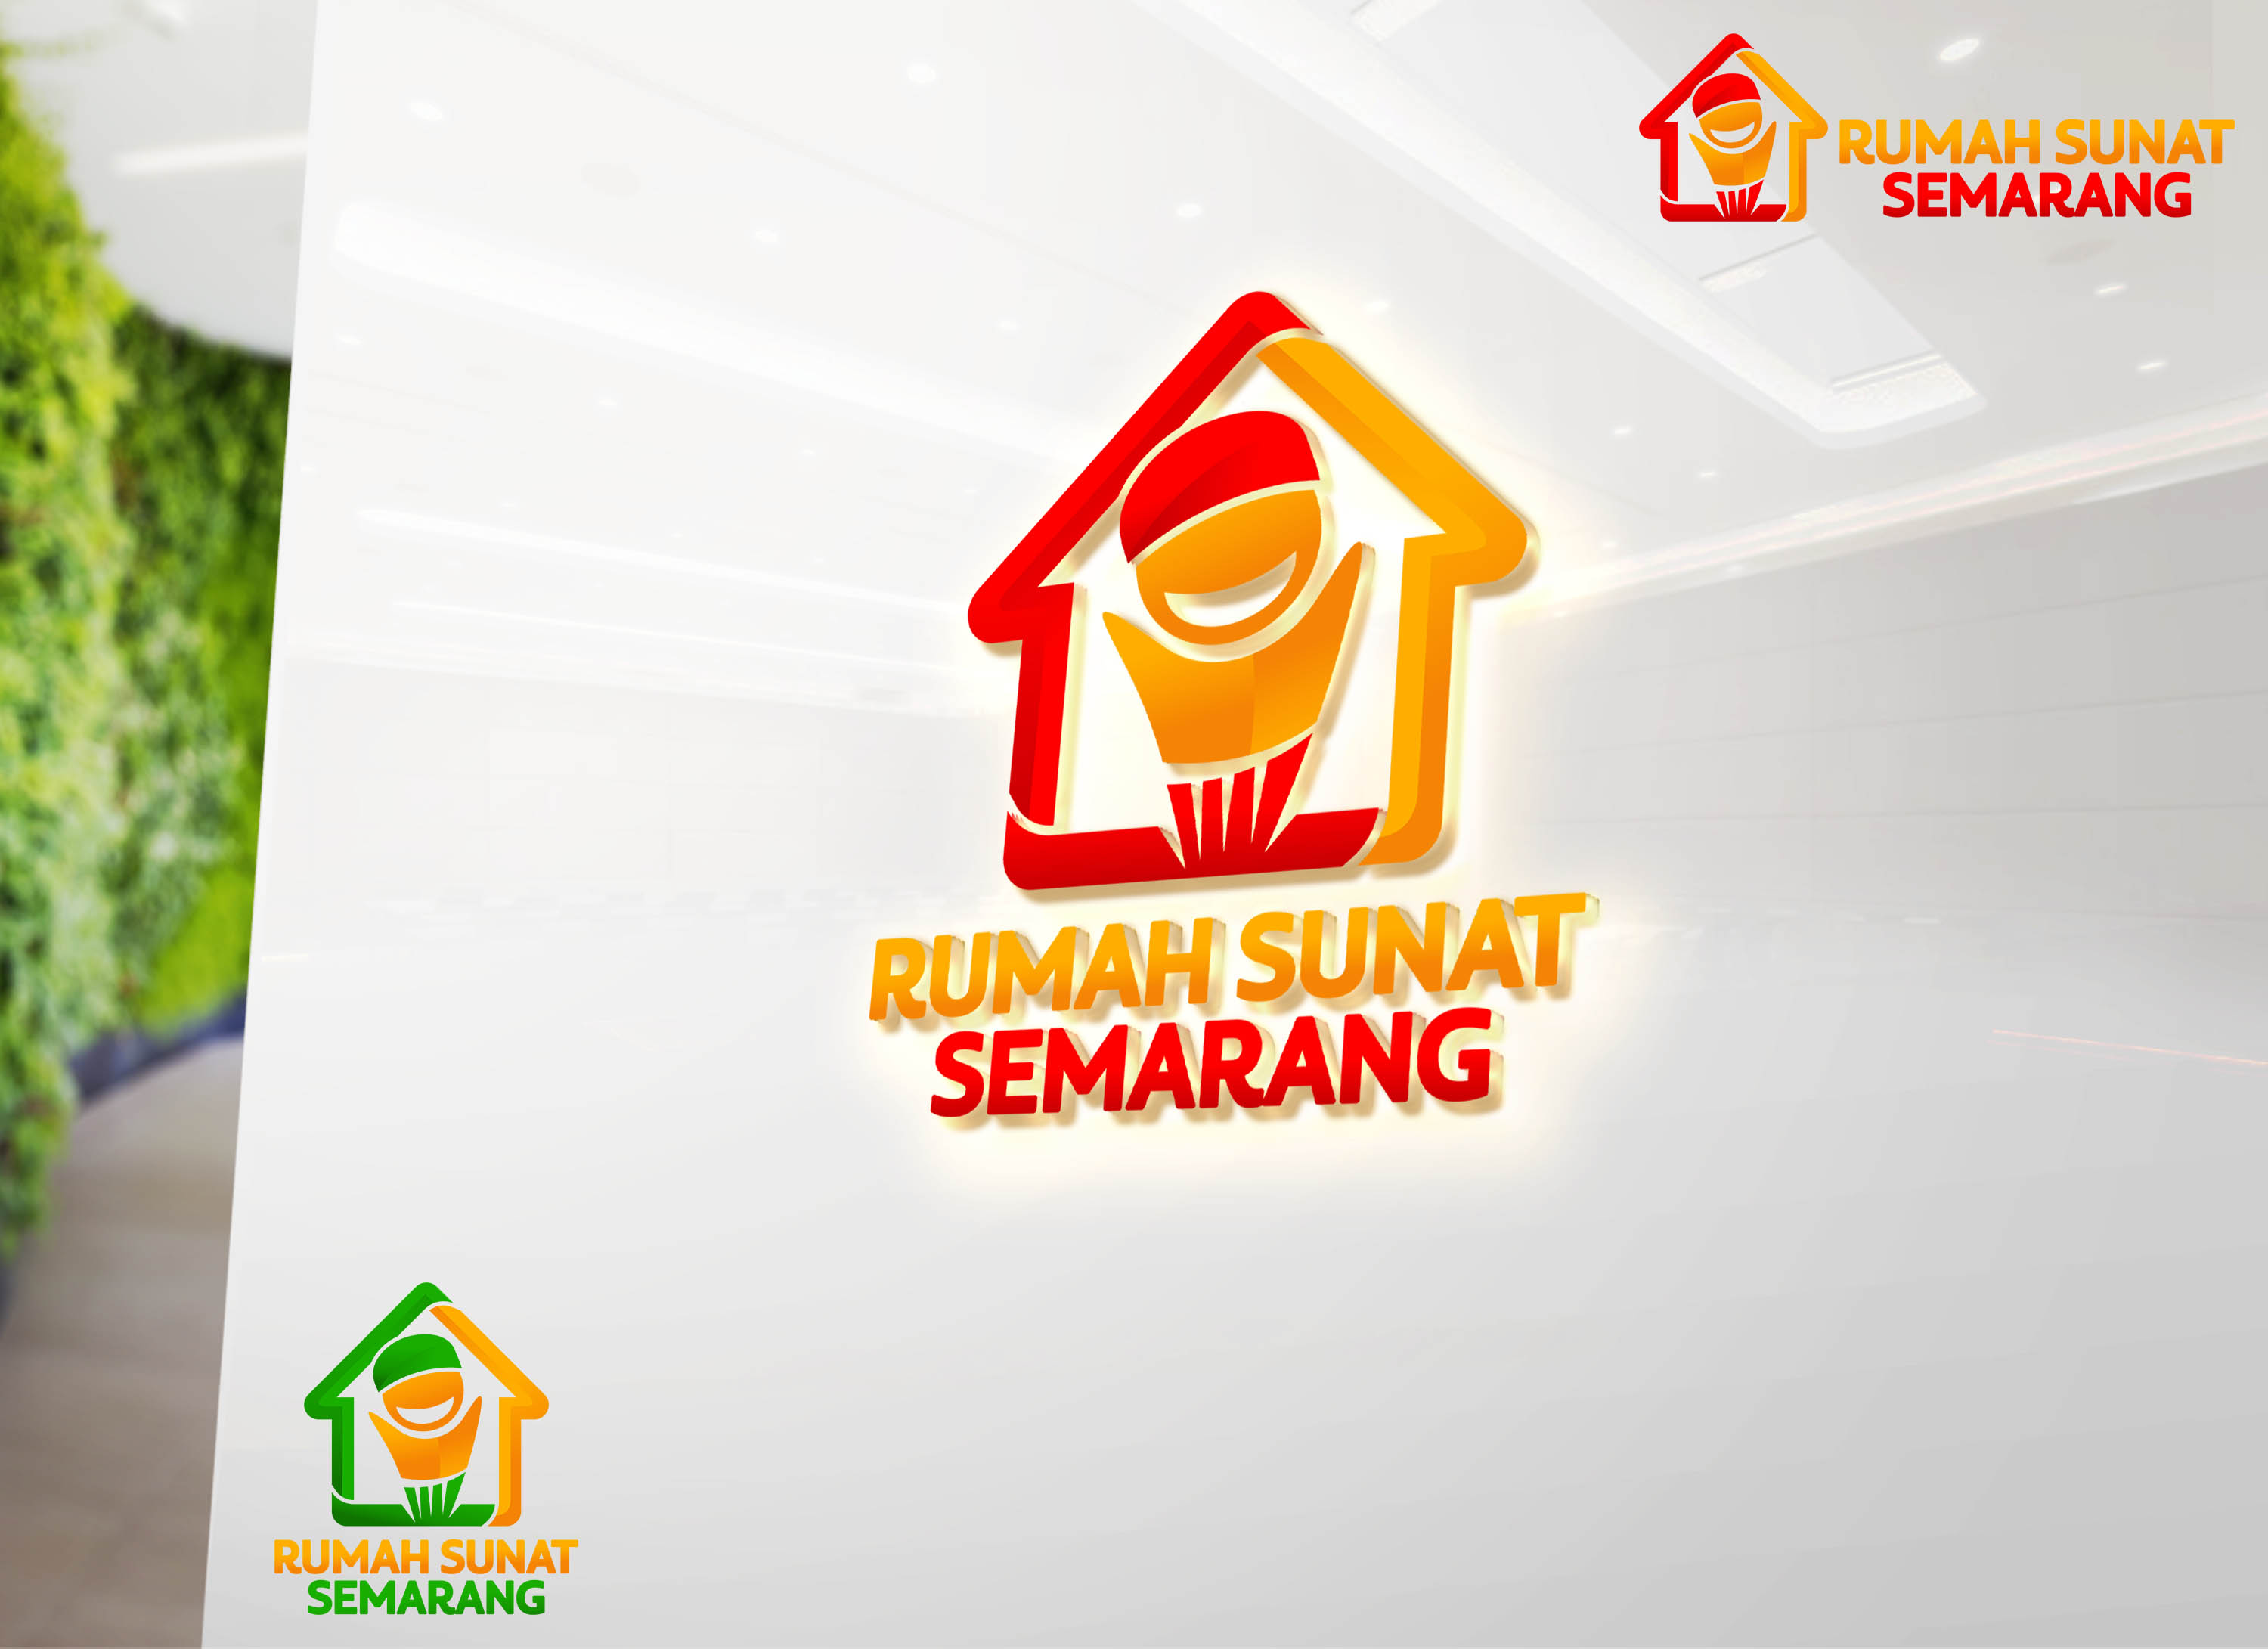 Rumah Sunat Semarang